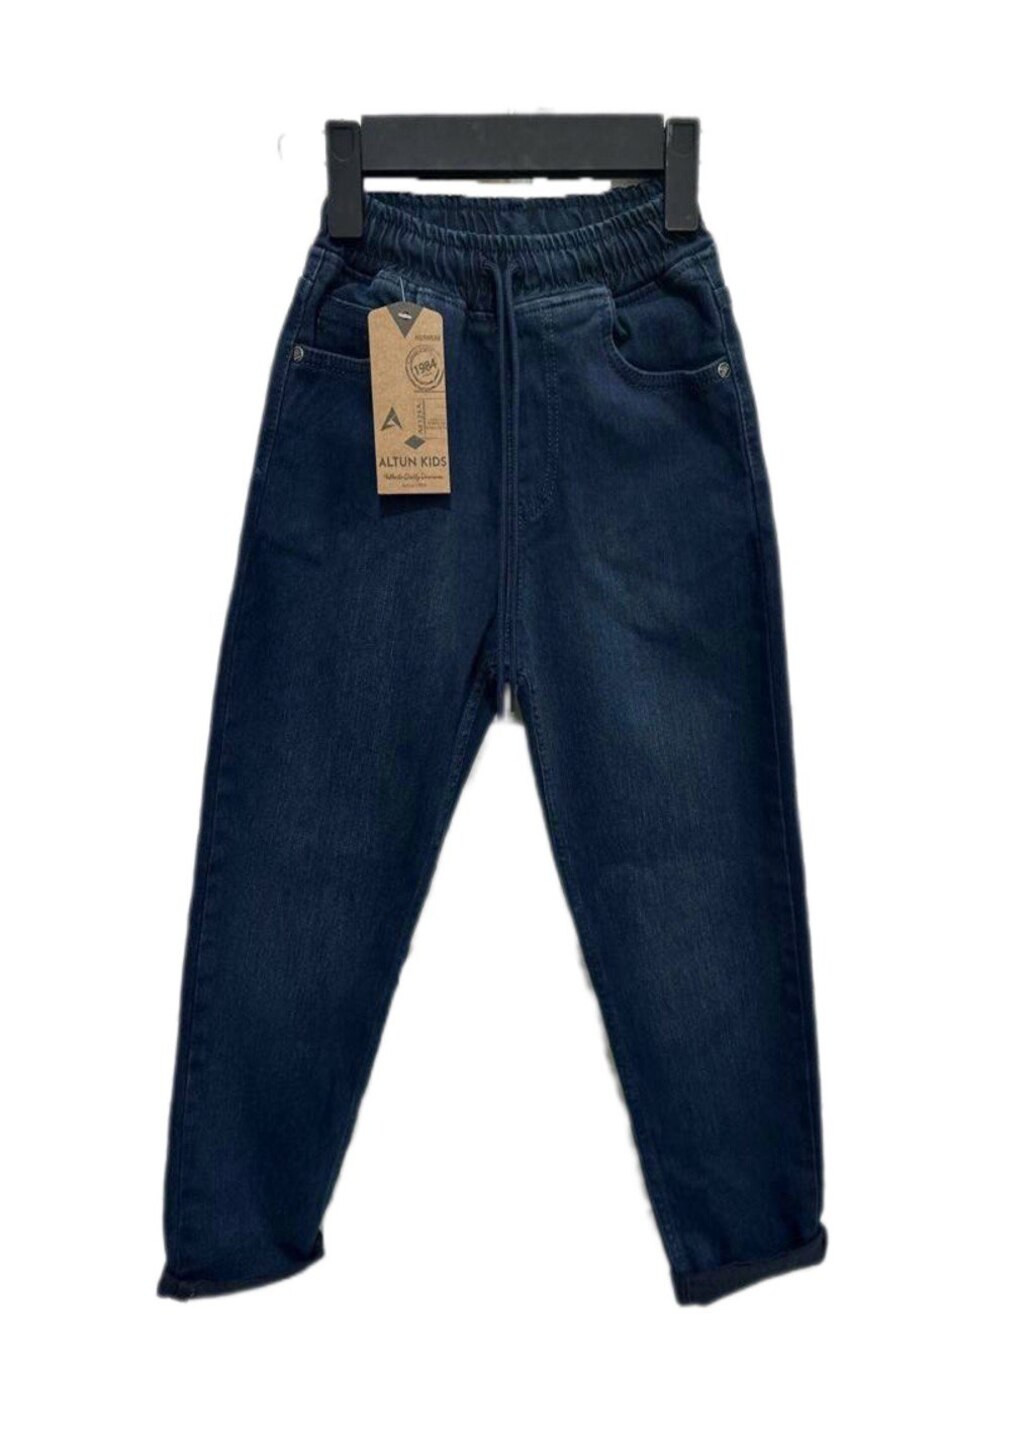 Темно-синие демисезонные джинсы мом для мальчика Altun